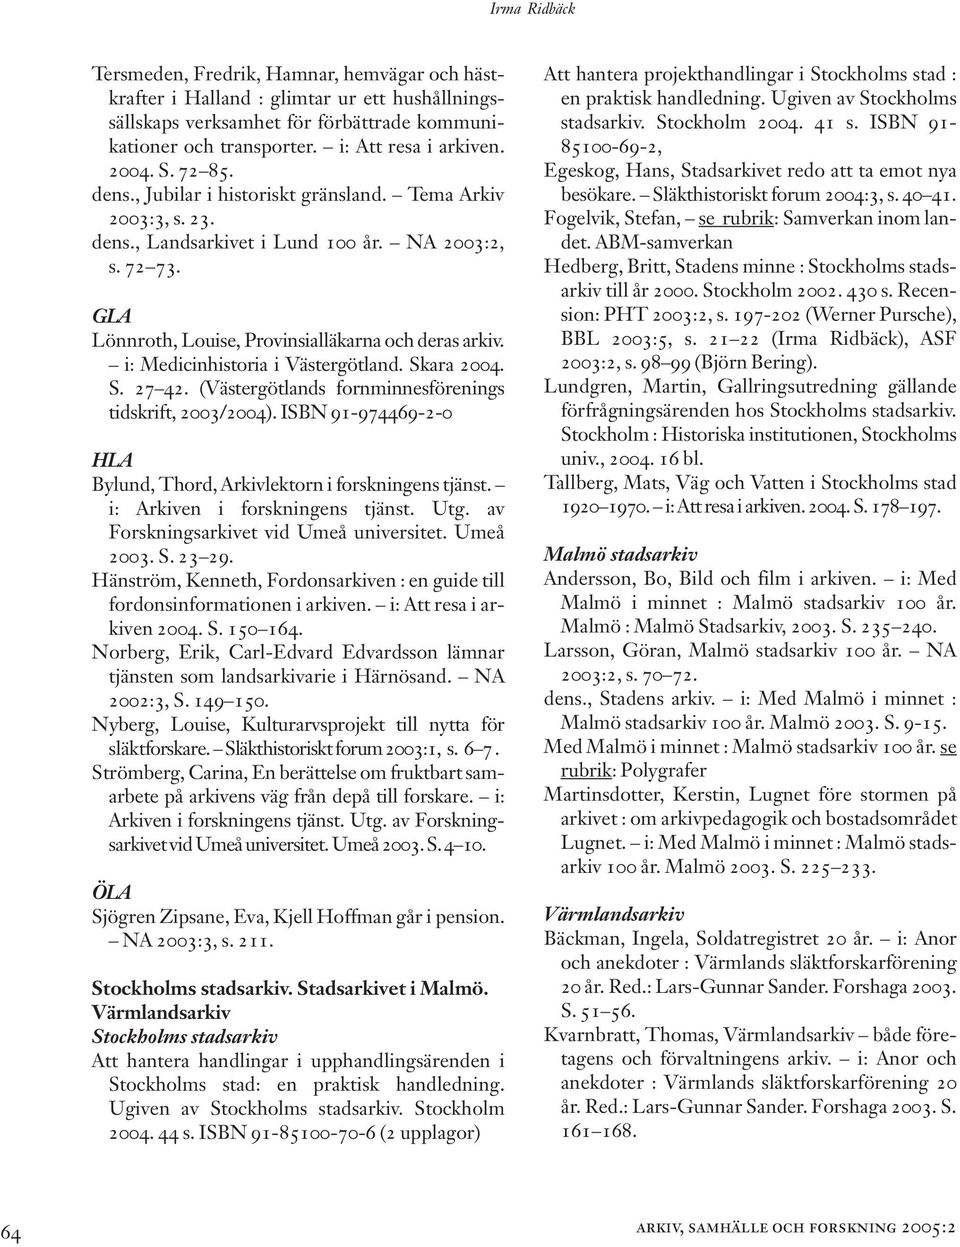 i: Medicinhistoria i Västergötland. Skara 2004. S. 27 42. (Västergötlands fornminnesförenings tidskrift, 2003/2004). ISBN 91-974469-2-0 HLA Bylund, Thord, Arkivlektorn i forskningens tjänst.